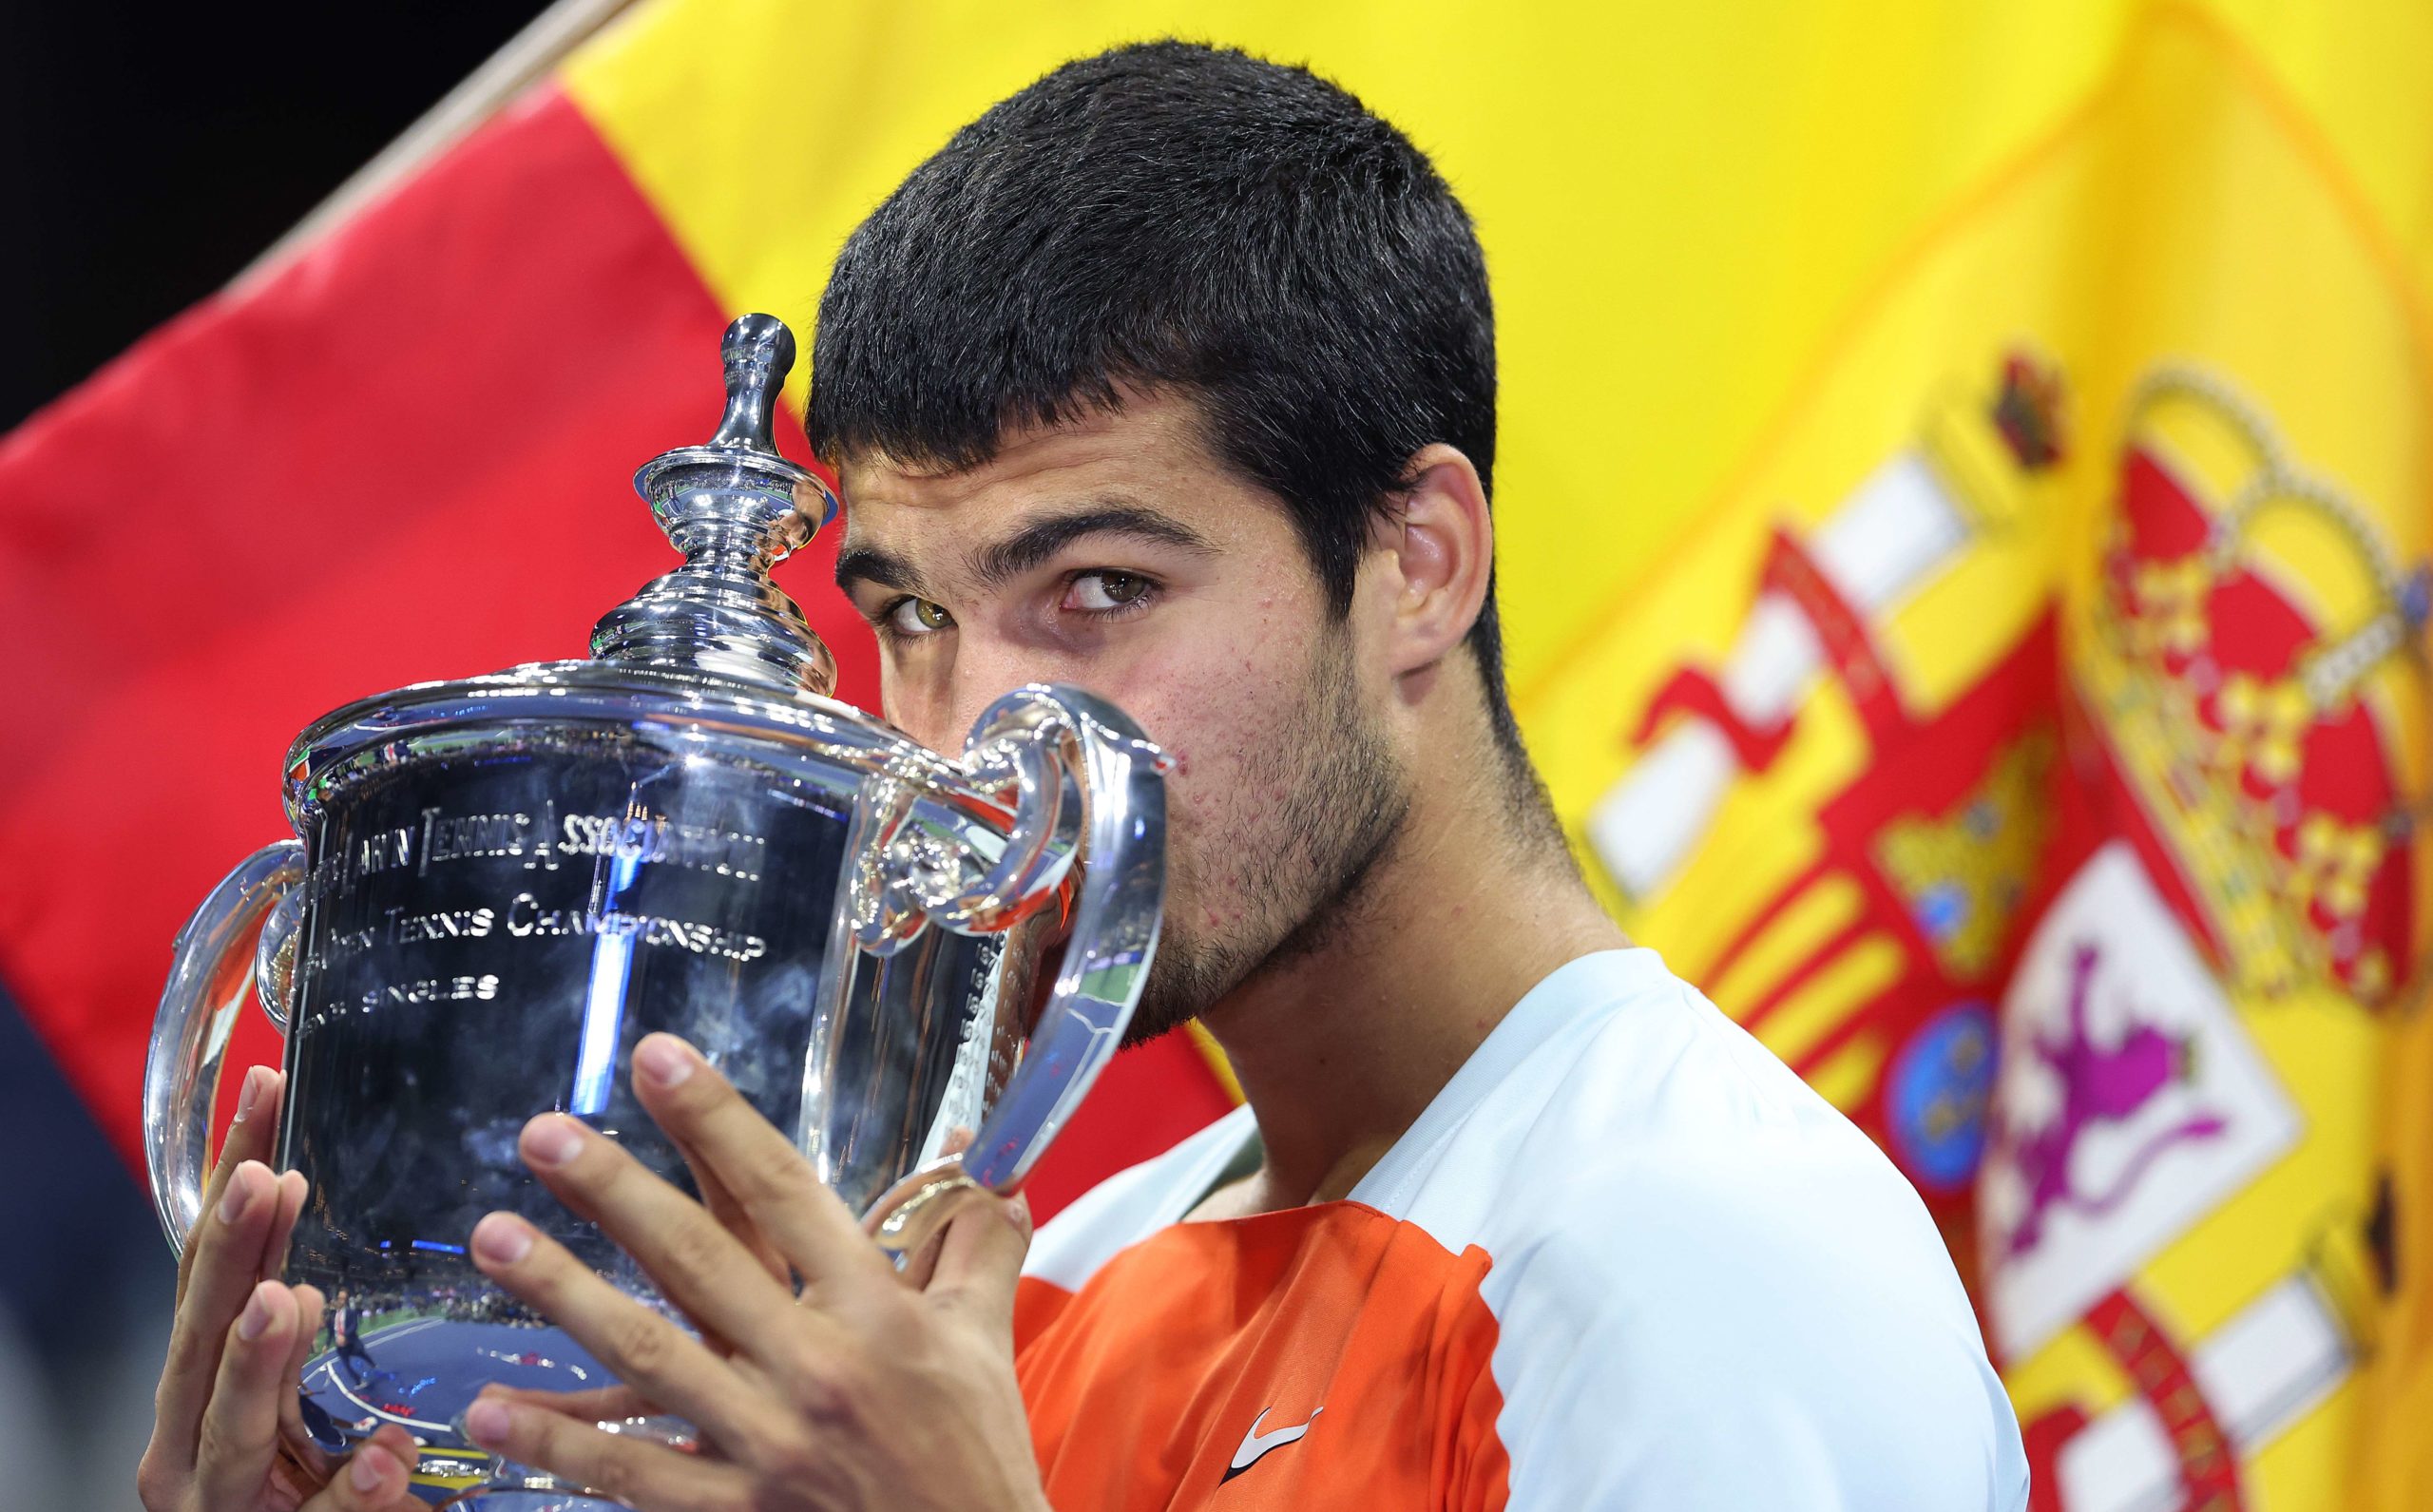 Qui est Carlos Alcaraz, vainqueur de l’US Open et plus jeune n°1 mondial de l’histoire?